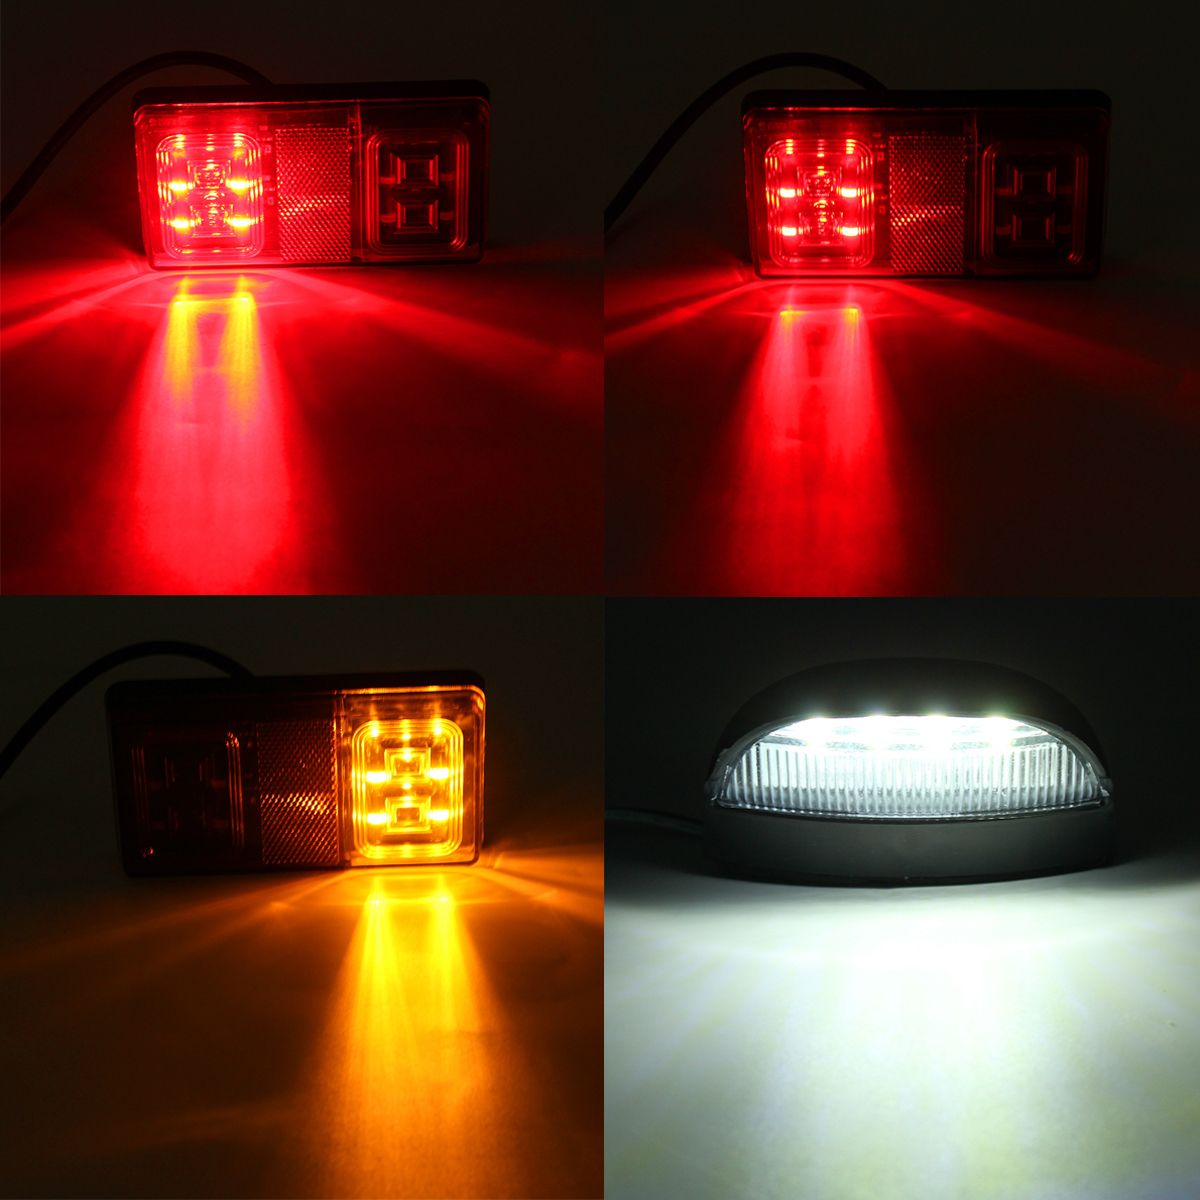 12V-16-LED-Car-Tail-Light-4-LED-License-Plate-Lamp-for-Truck-Trailer-Boat-1389529